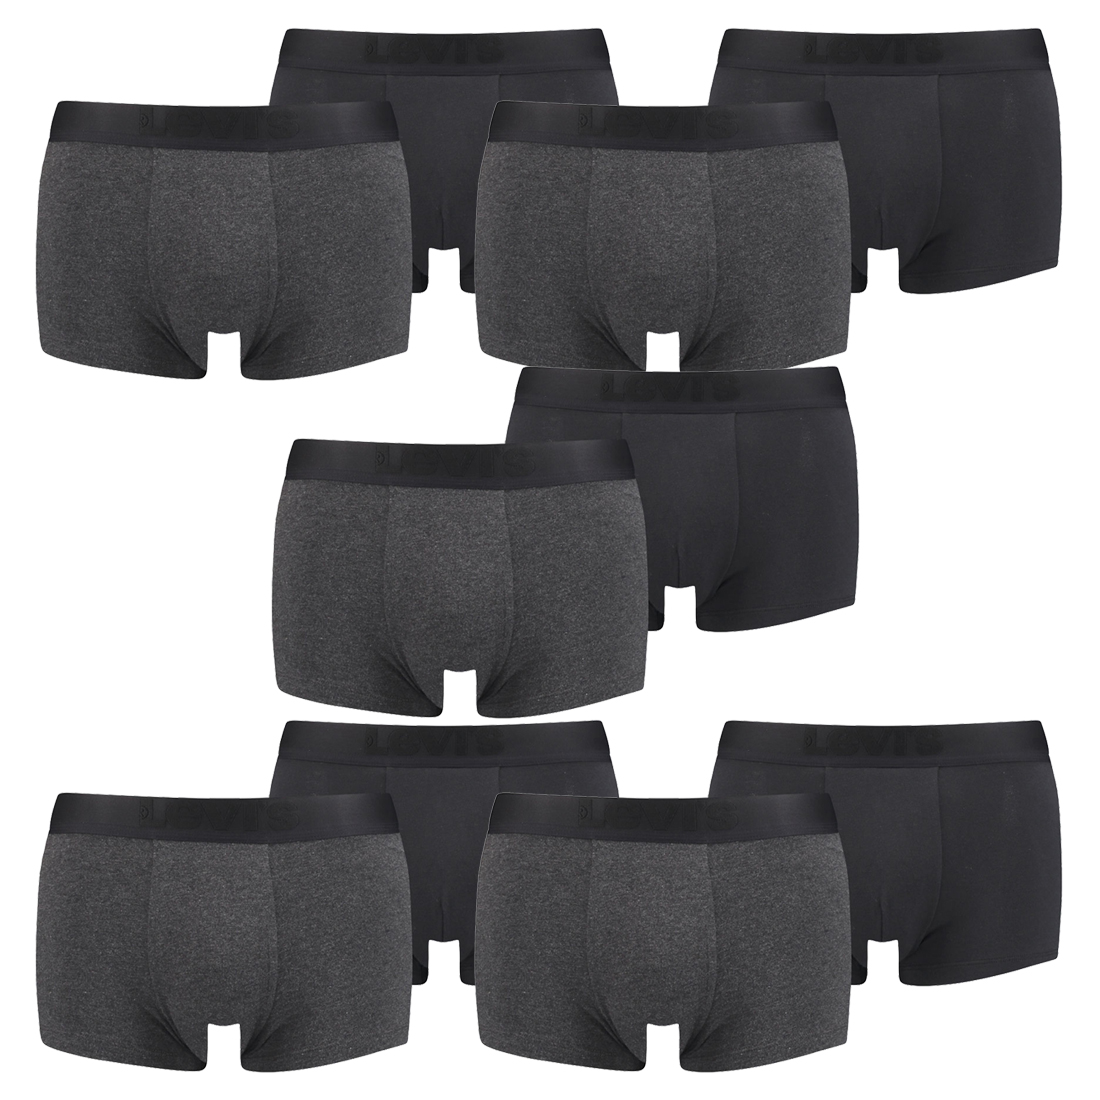 10er Pack Levis Herren Premium Trunk Boxer Shorts Unterhose Pant Unterwäsche